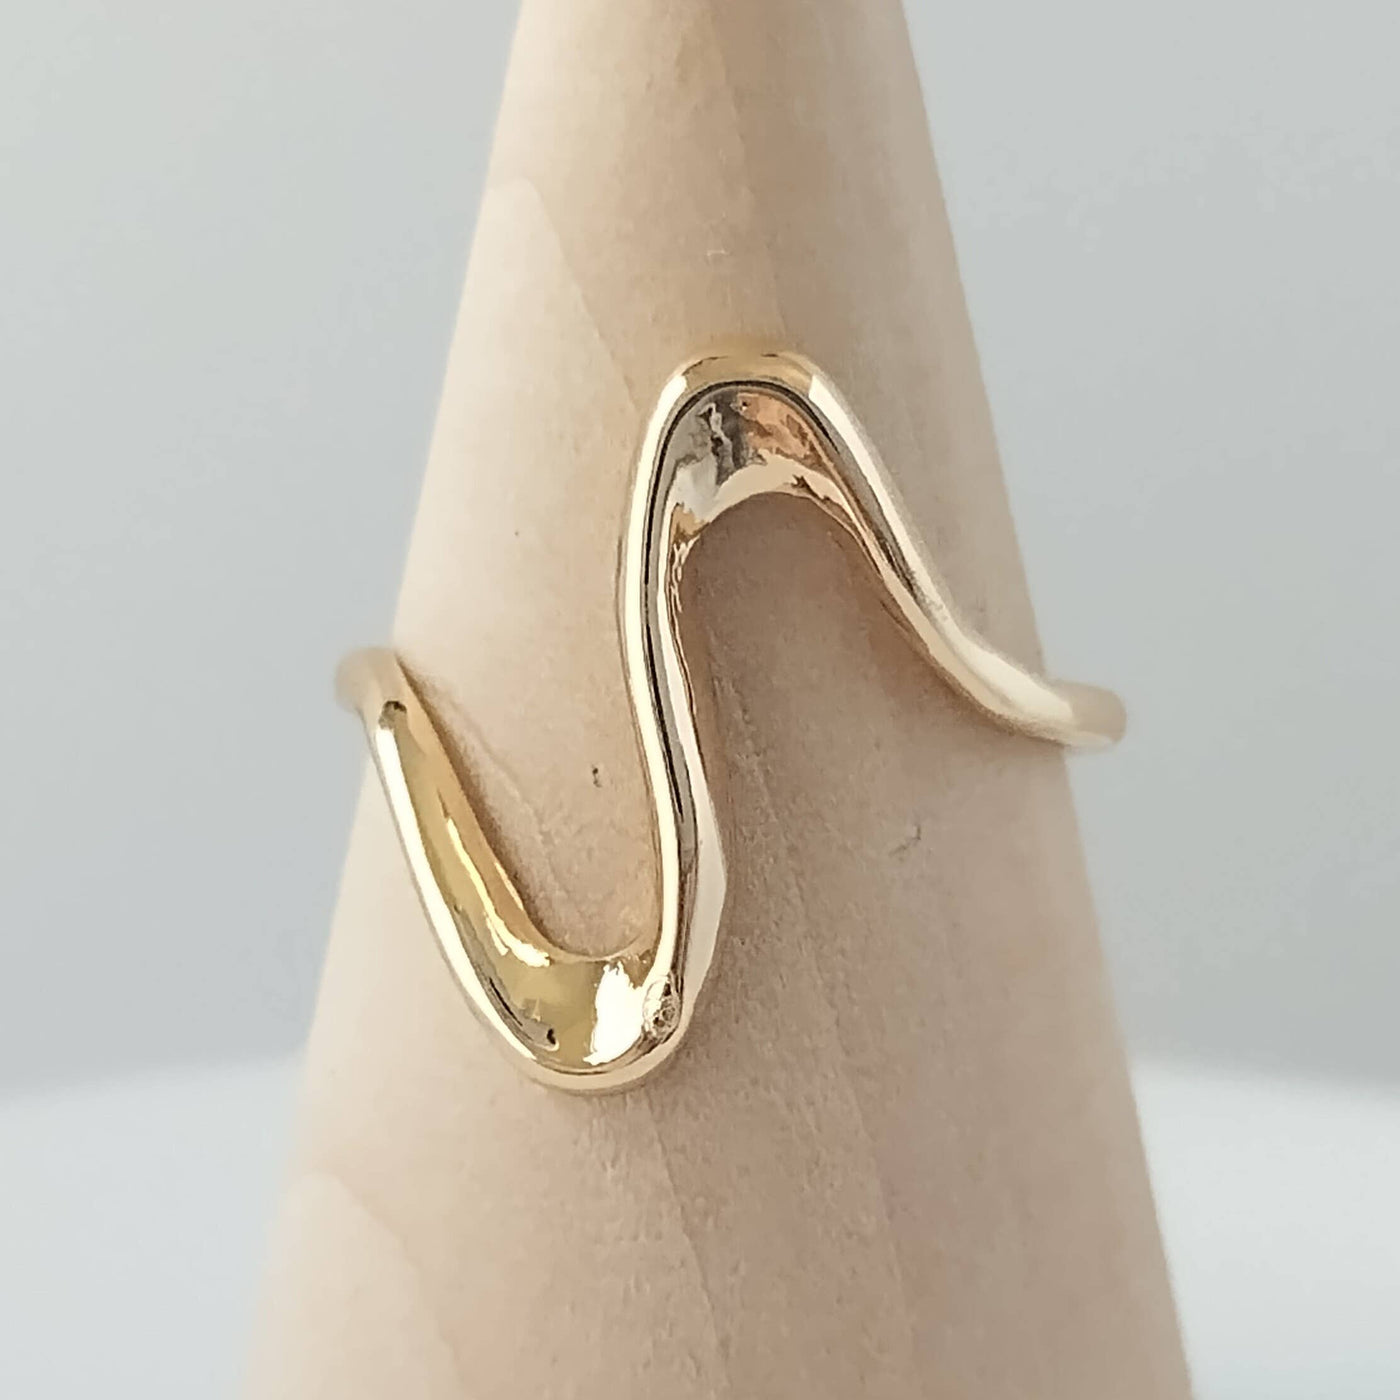 Gold Wave Ring,: Adjustable